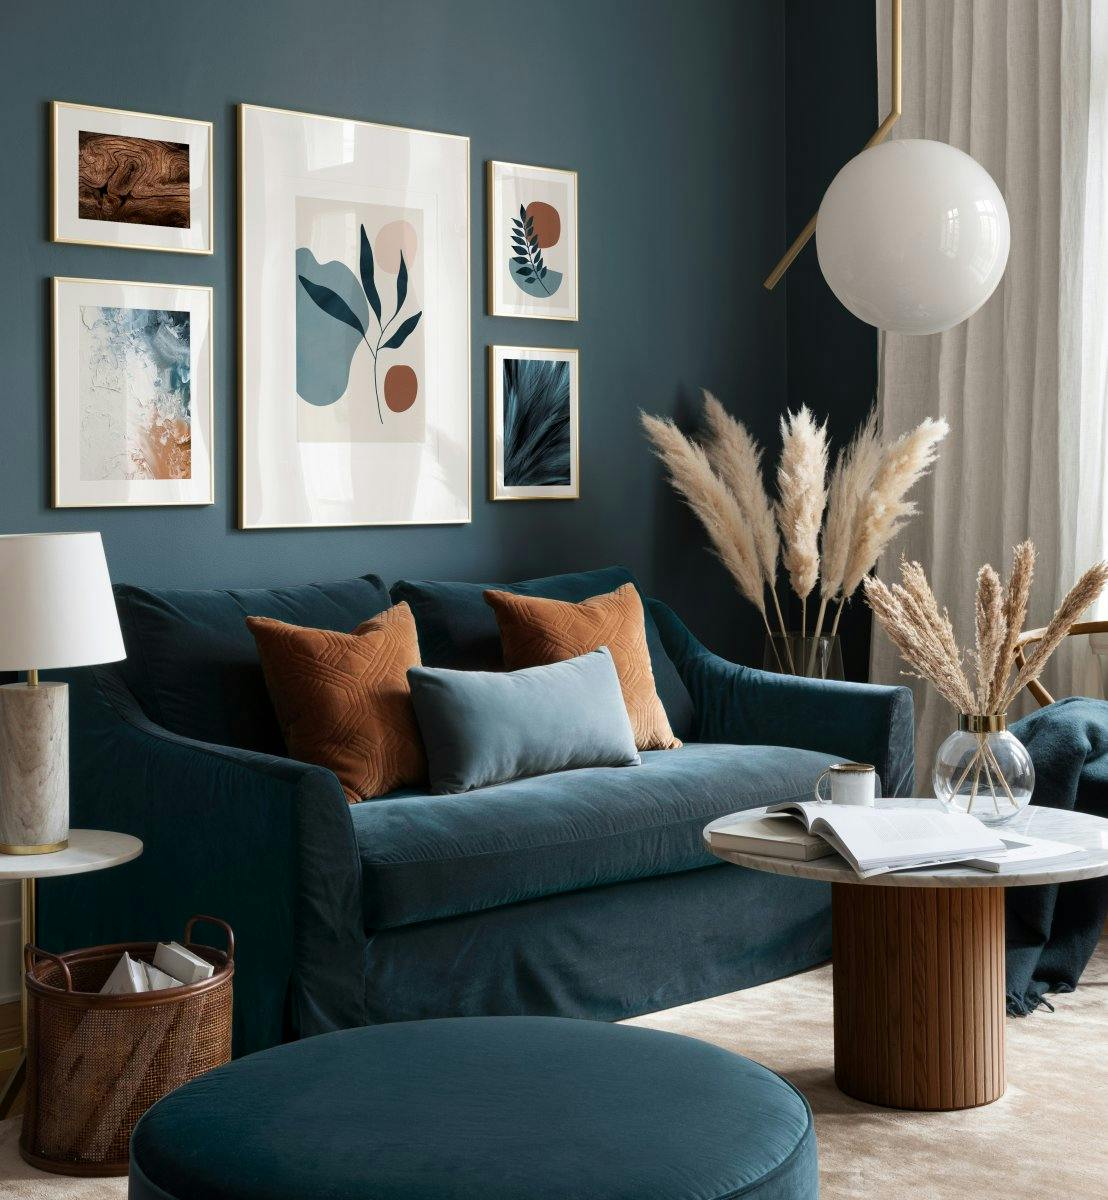 Abstrakte grafiske plakater og blå teal-blå kunsttryk i moderne stue